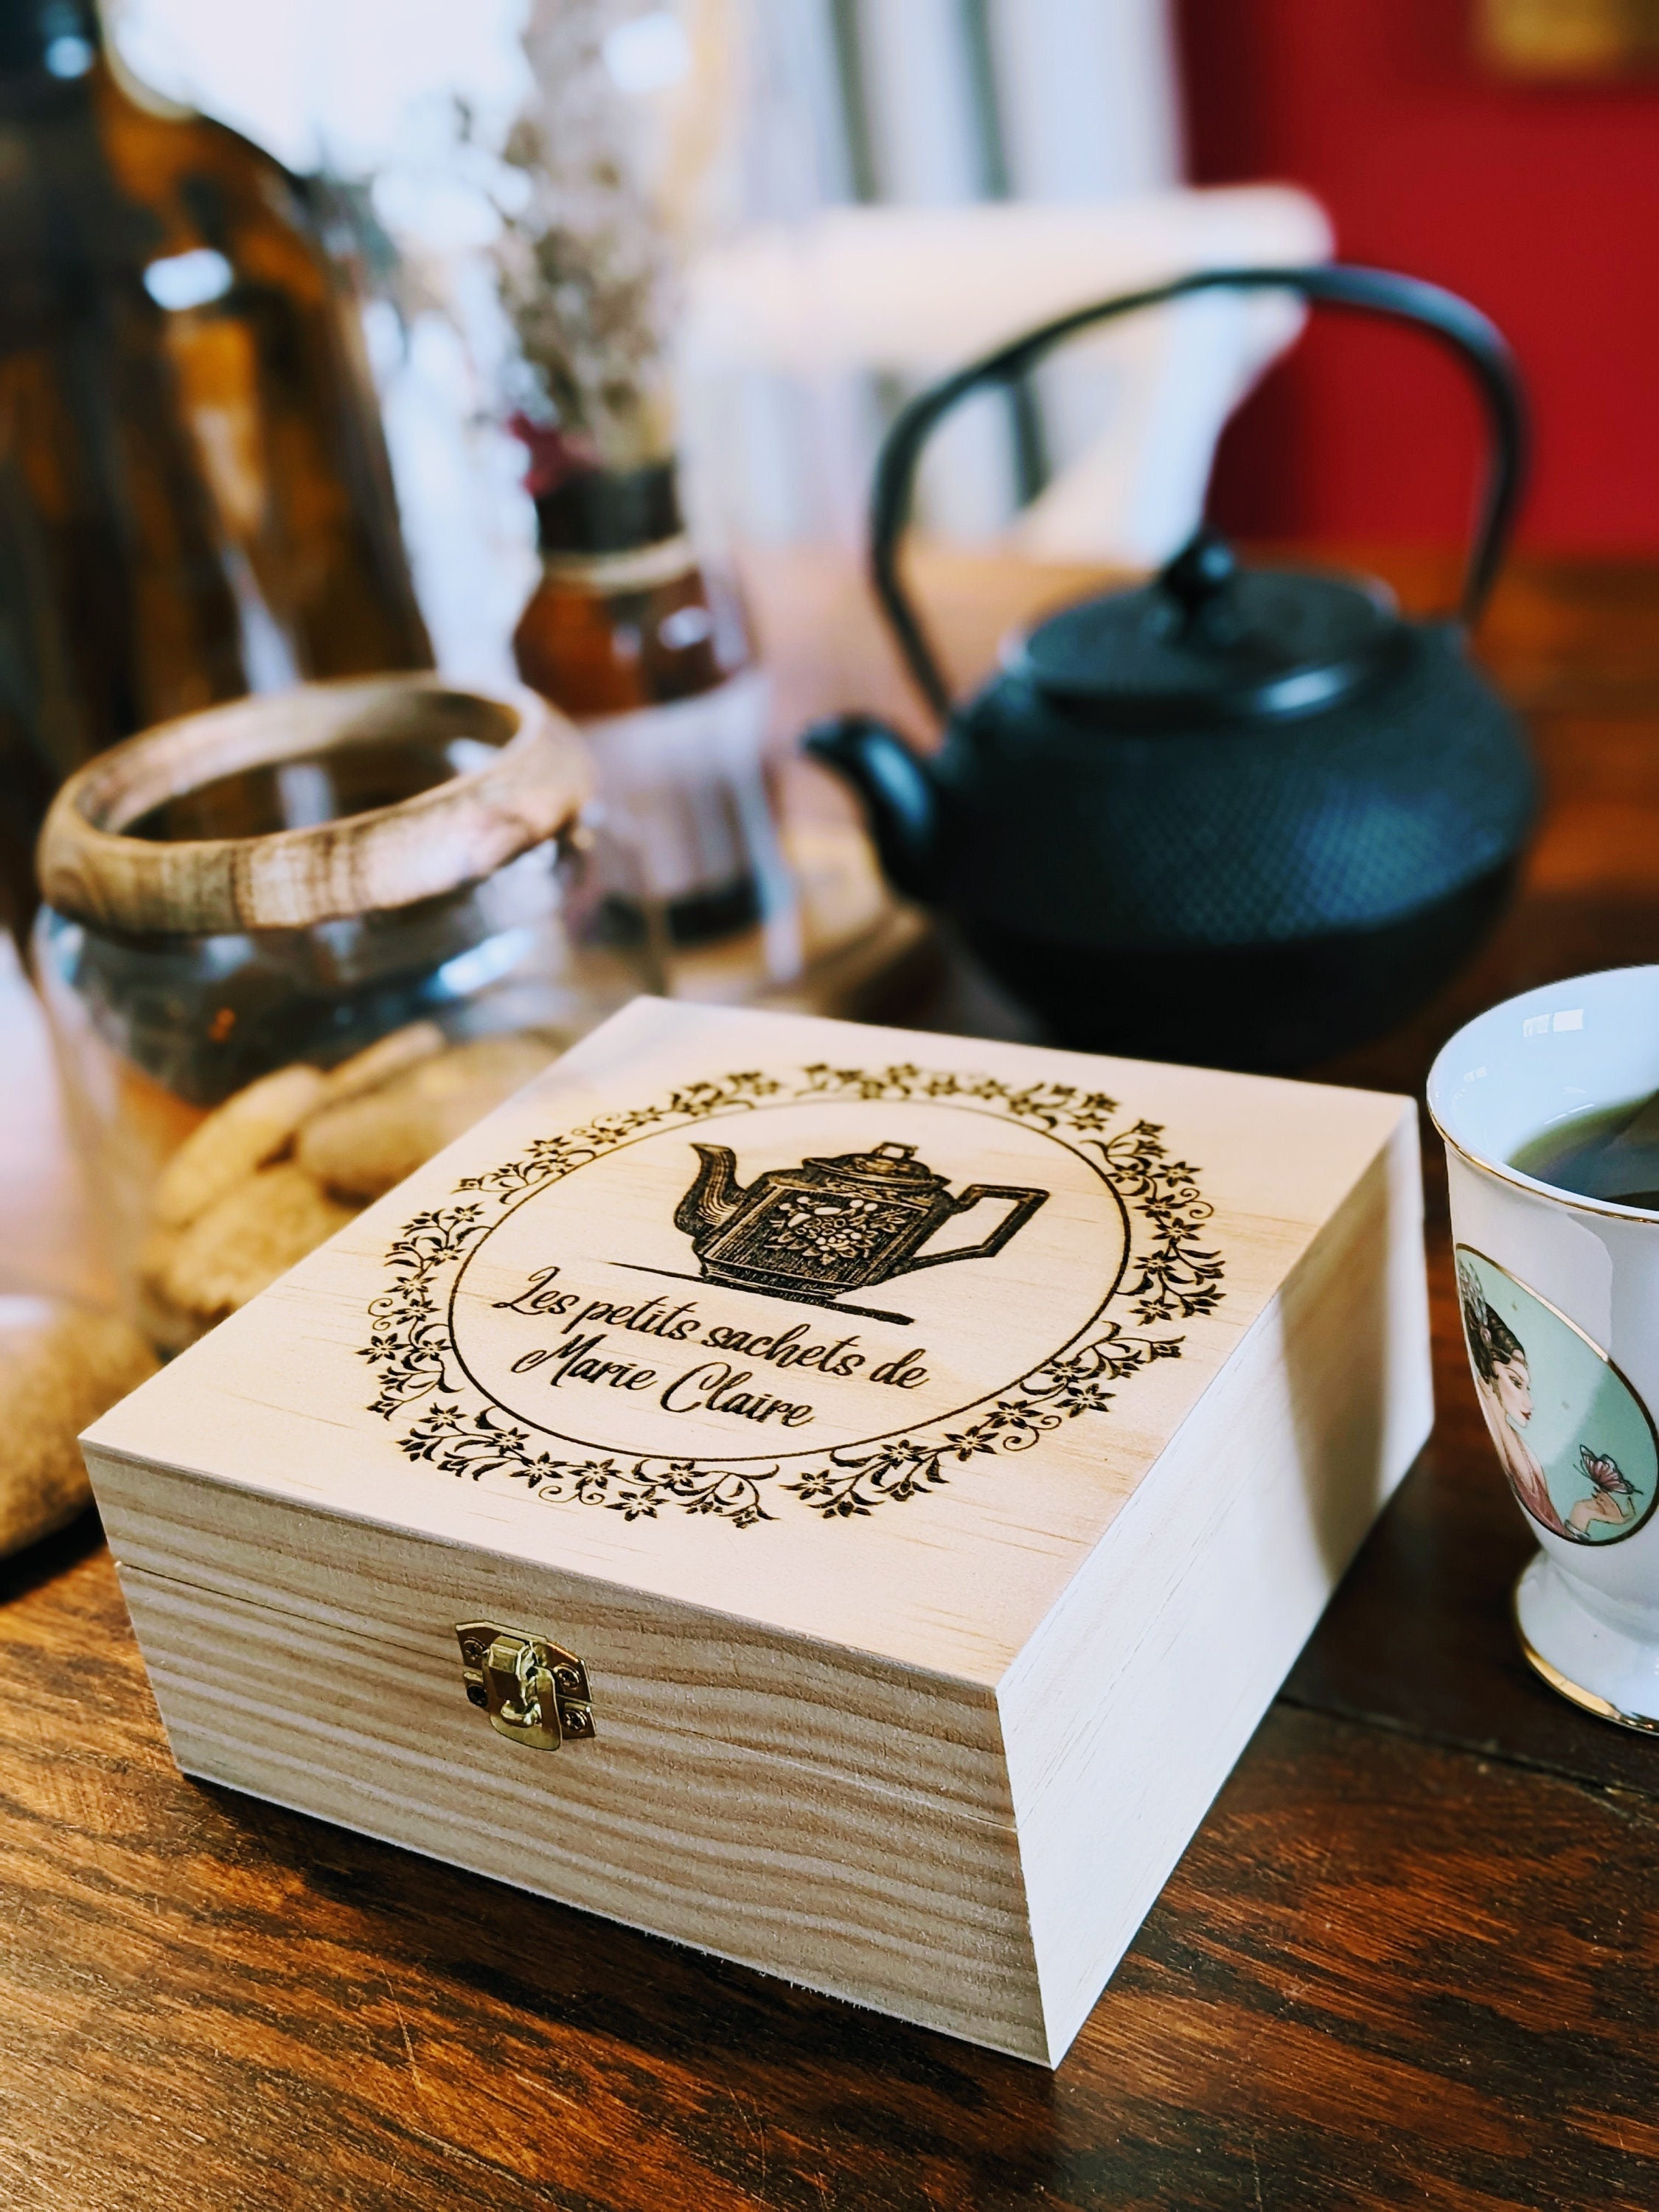 Boîte cadeau Dites-le avec du thé à personnaliser - English Tea Shop